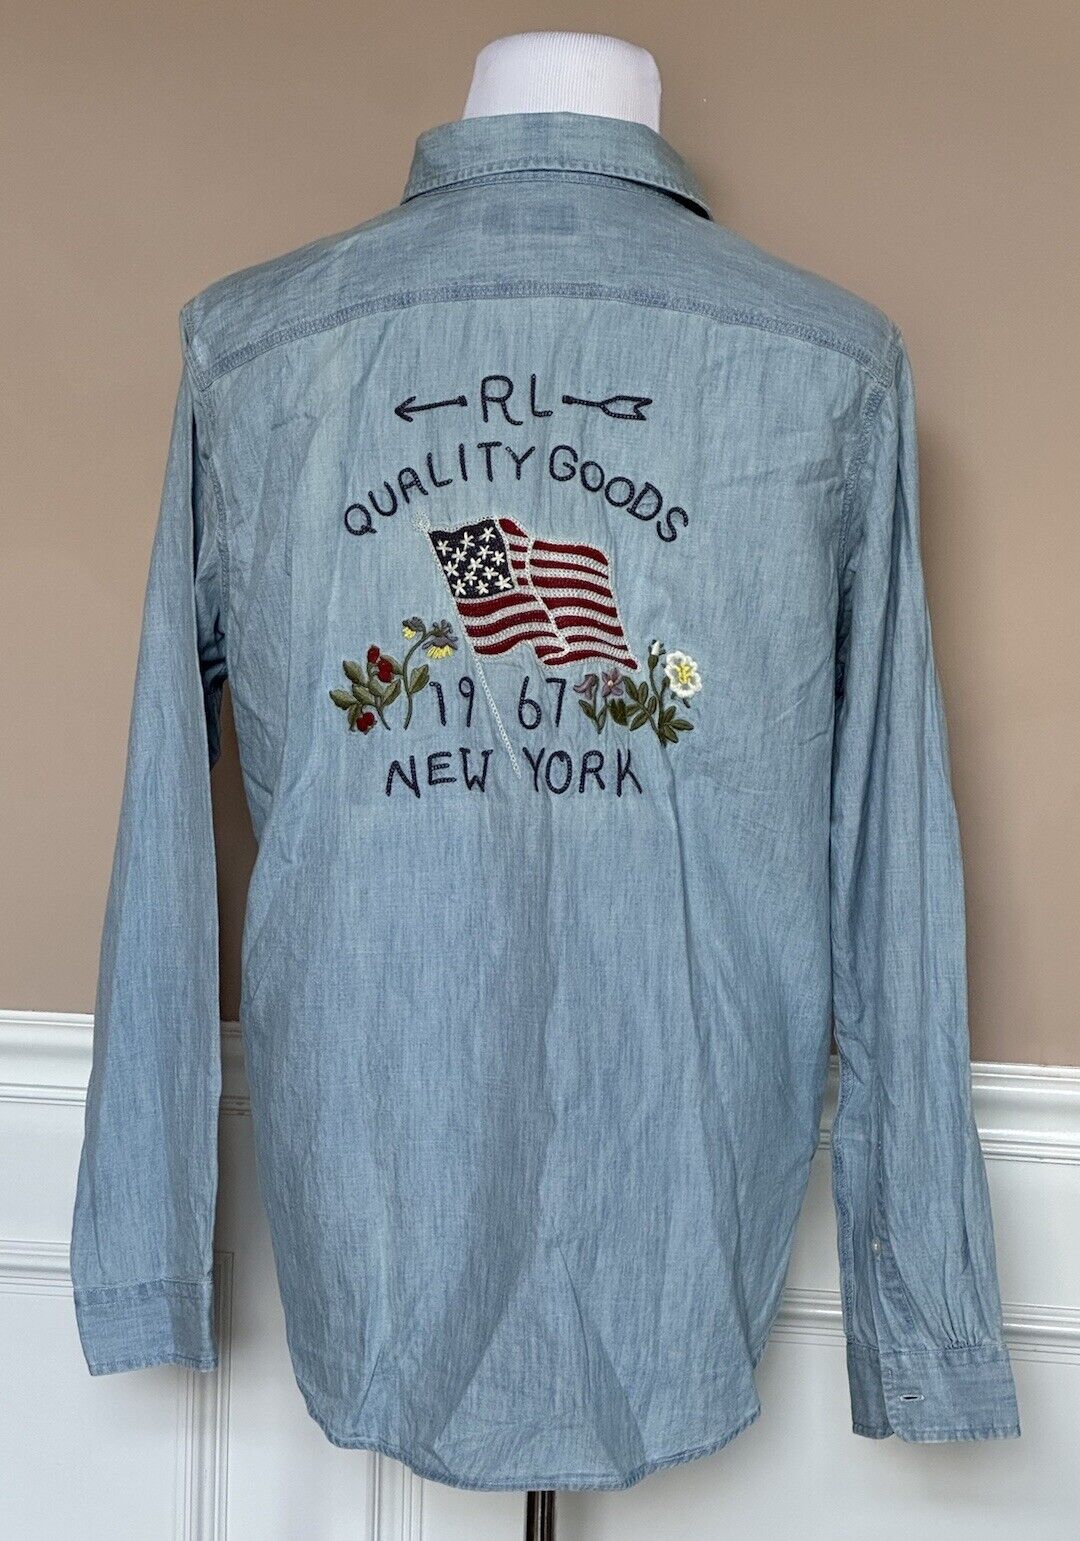 Neu mit Etikett: 148 $ Polo Ralph Lauren Herren-Button-Down-Baumwollhemd in Blau, Größe L